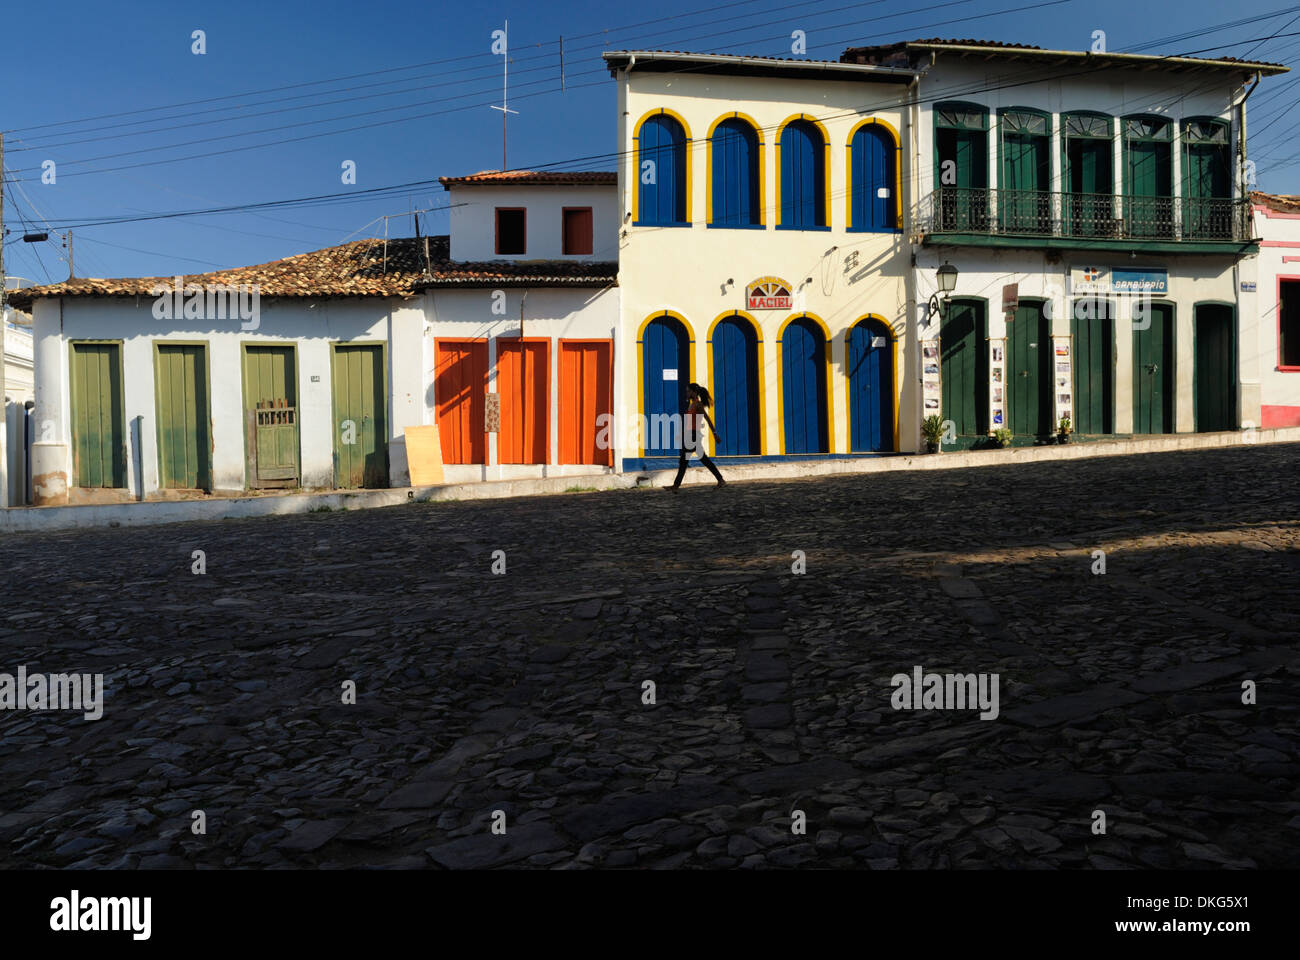 Brasilien, Bahia, Lencois: Typisch koloniale Architektur und gepflasterten Straße in Lencois bezauberndes Zentrum. Stockfoto